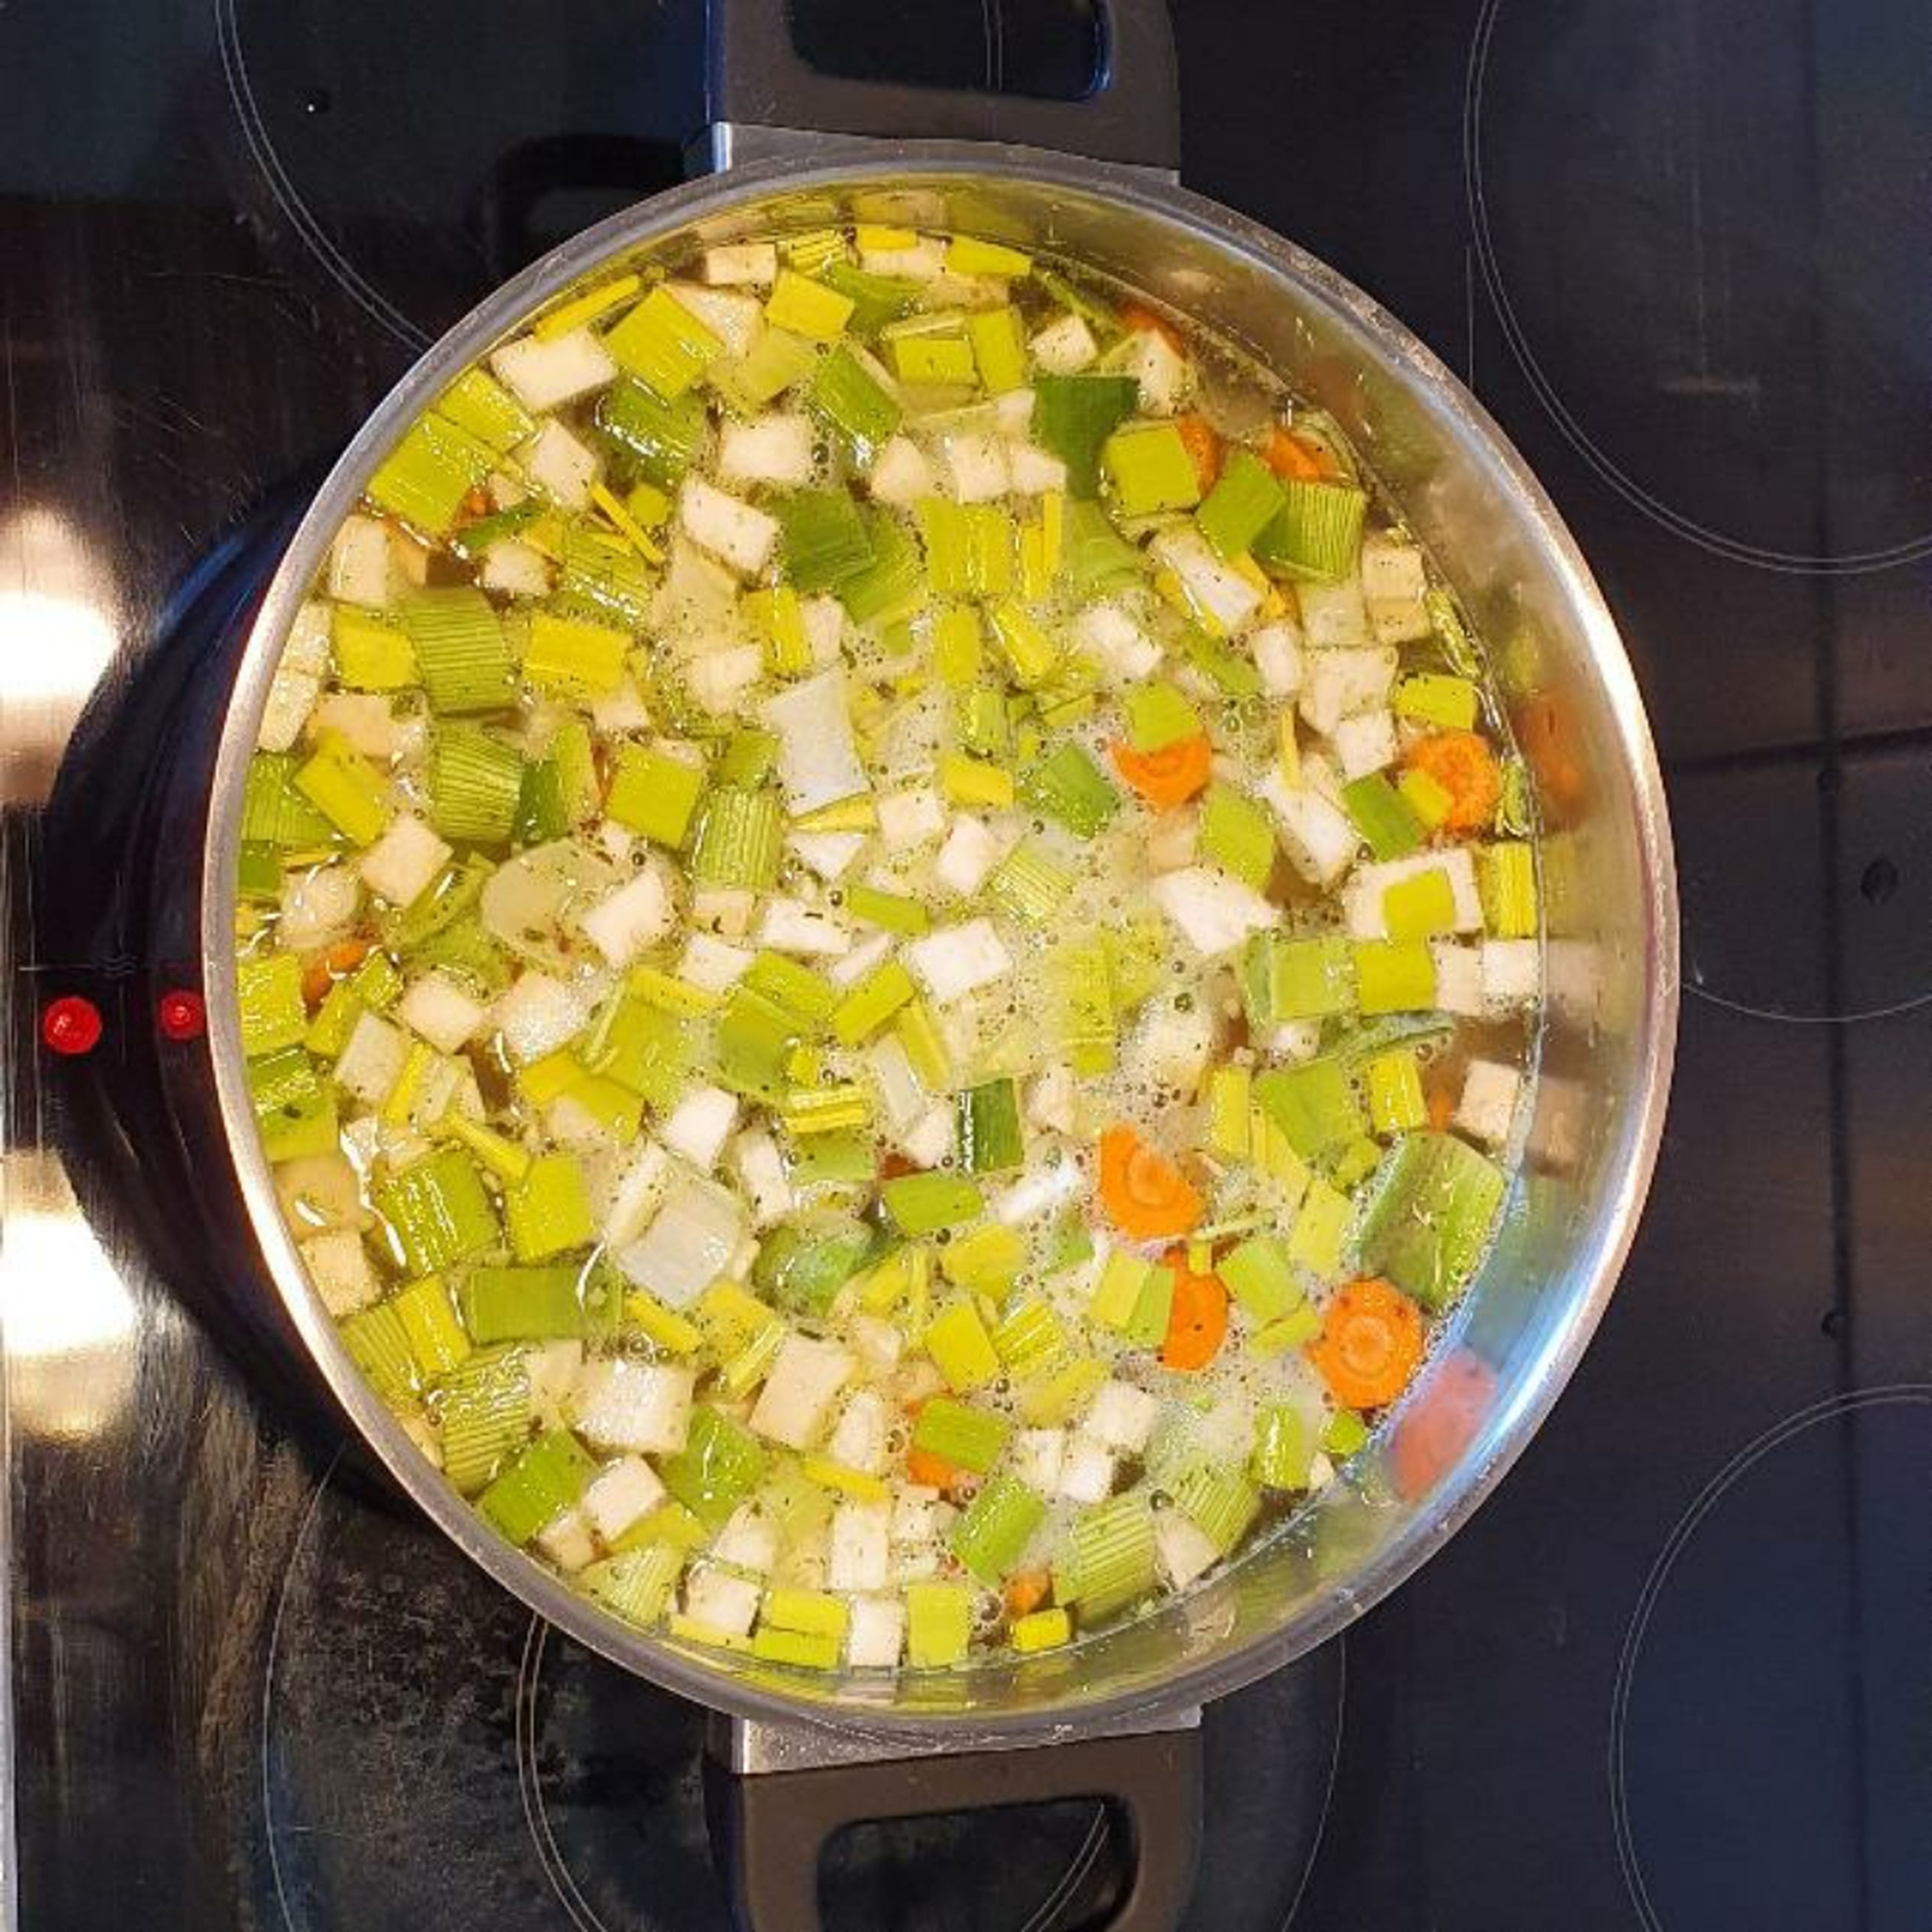 Kartoffeln und Suppengrün zusammen mit der Gemüsebrühe 20 Minuten köcheln lassen.